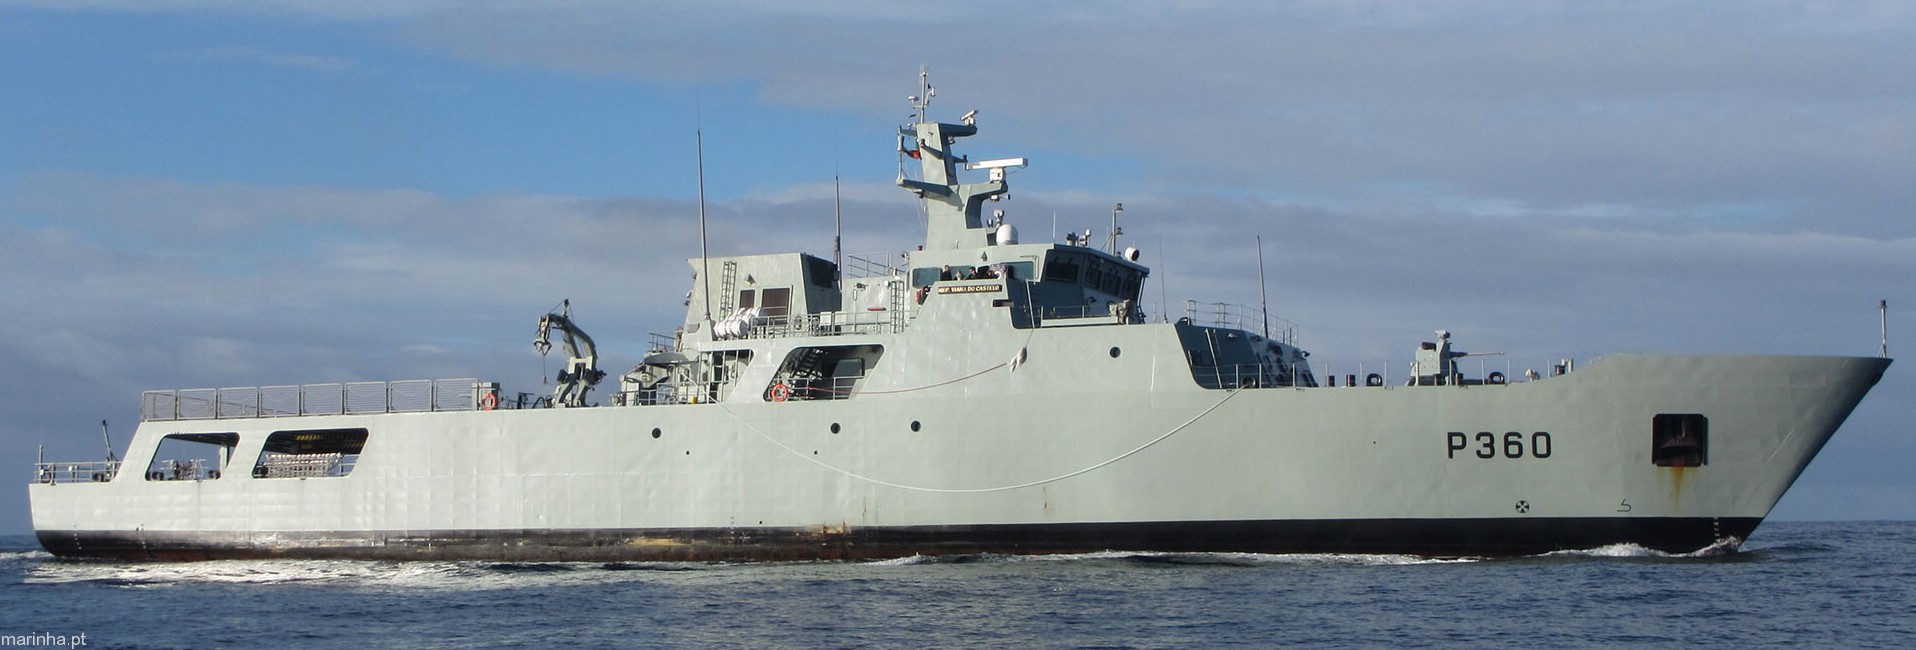 p-360 nrp viana do castelo class offshore patrol vessel opv portuguese navy marinha npo2000 06